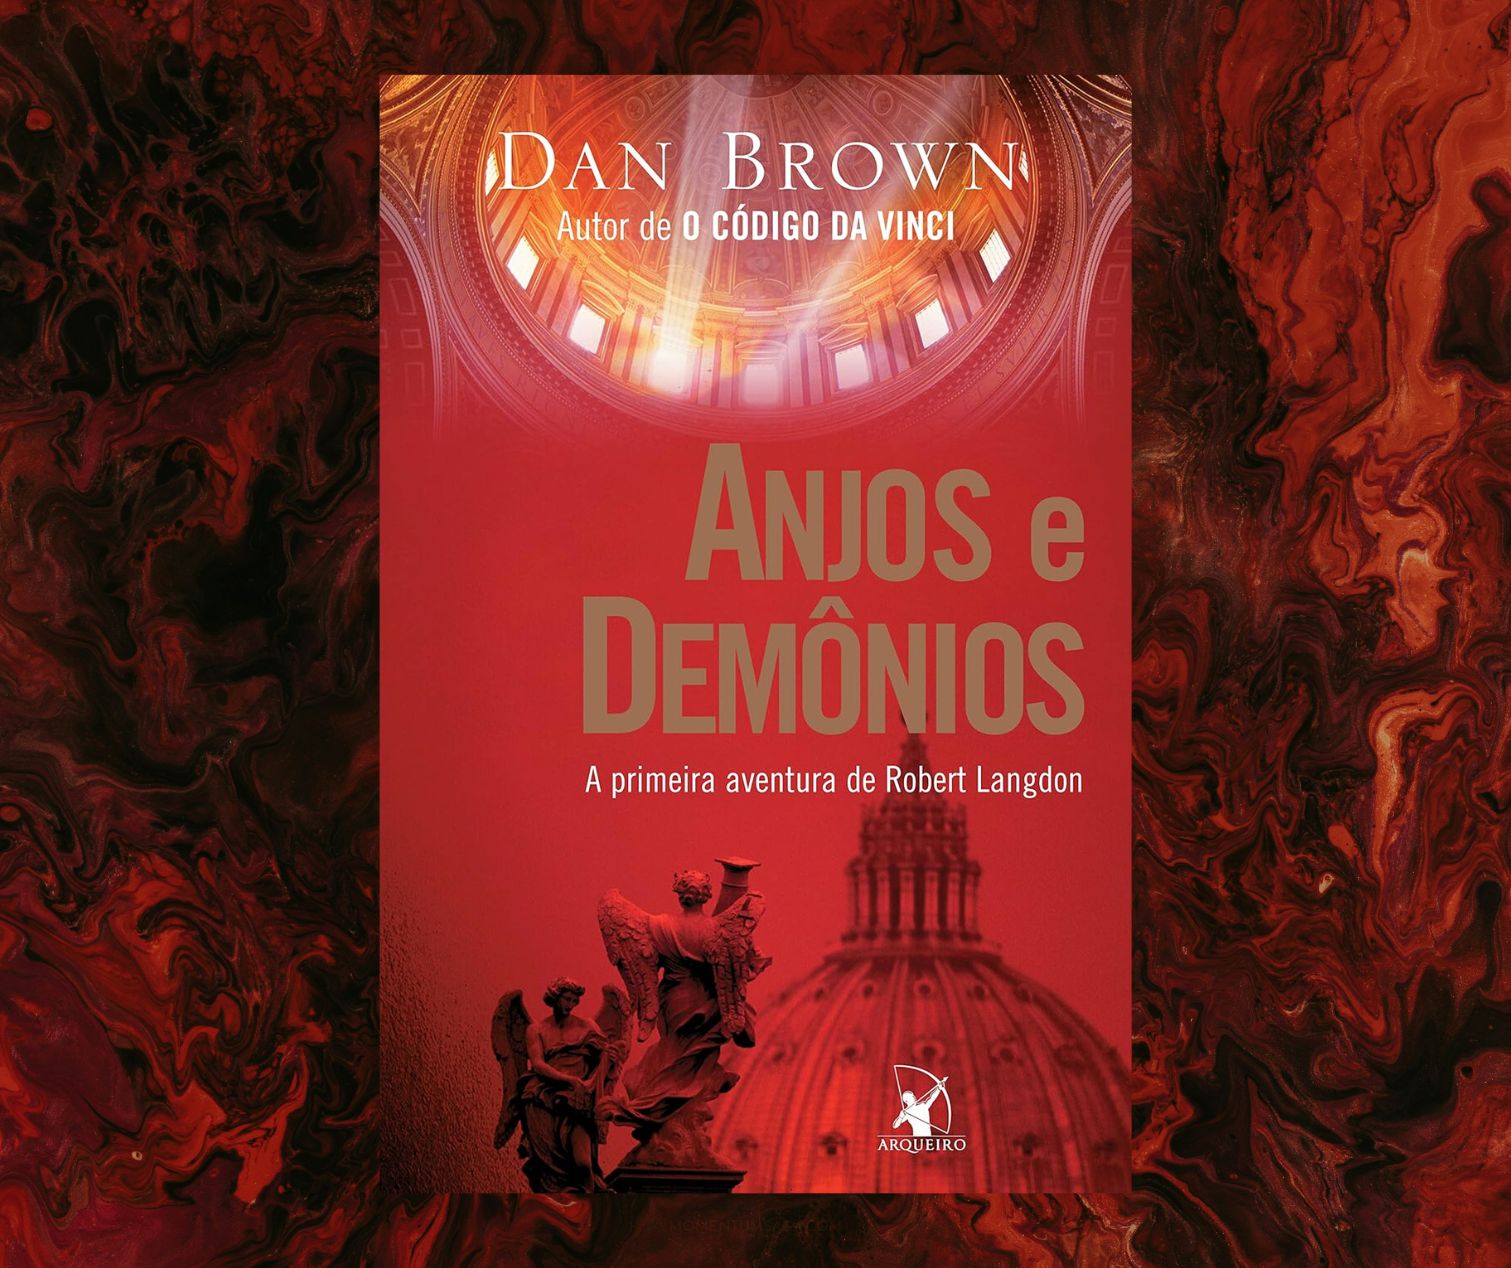 Resenha: Anjos e demônios, de Dan Brown